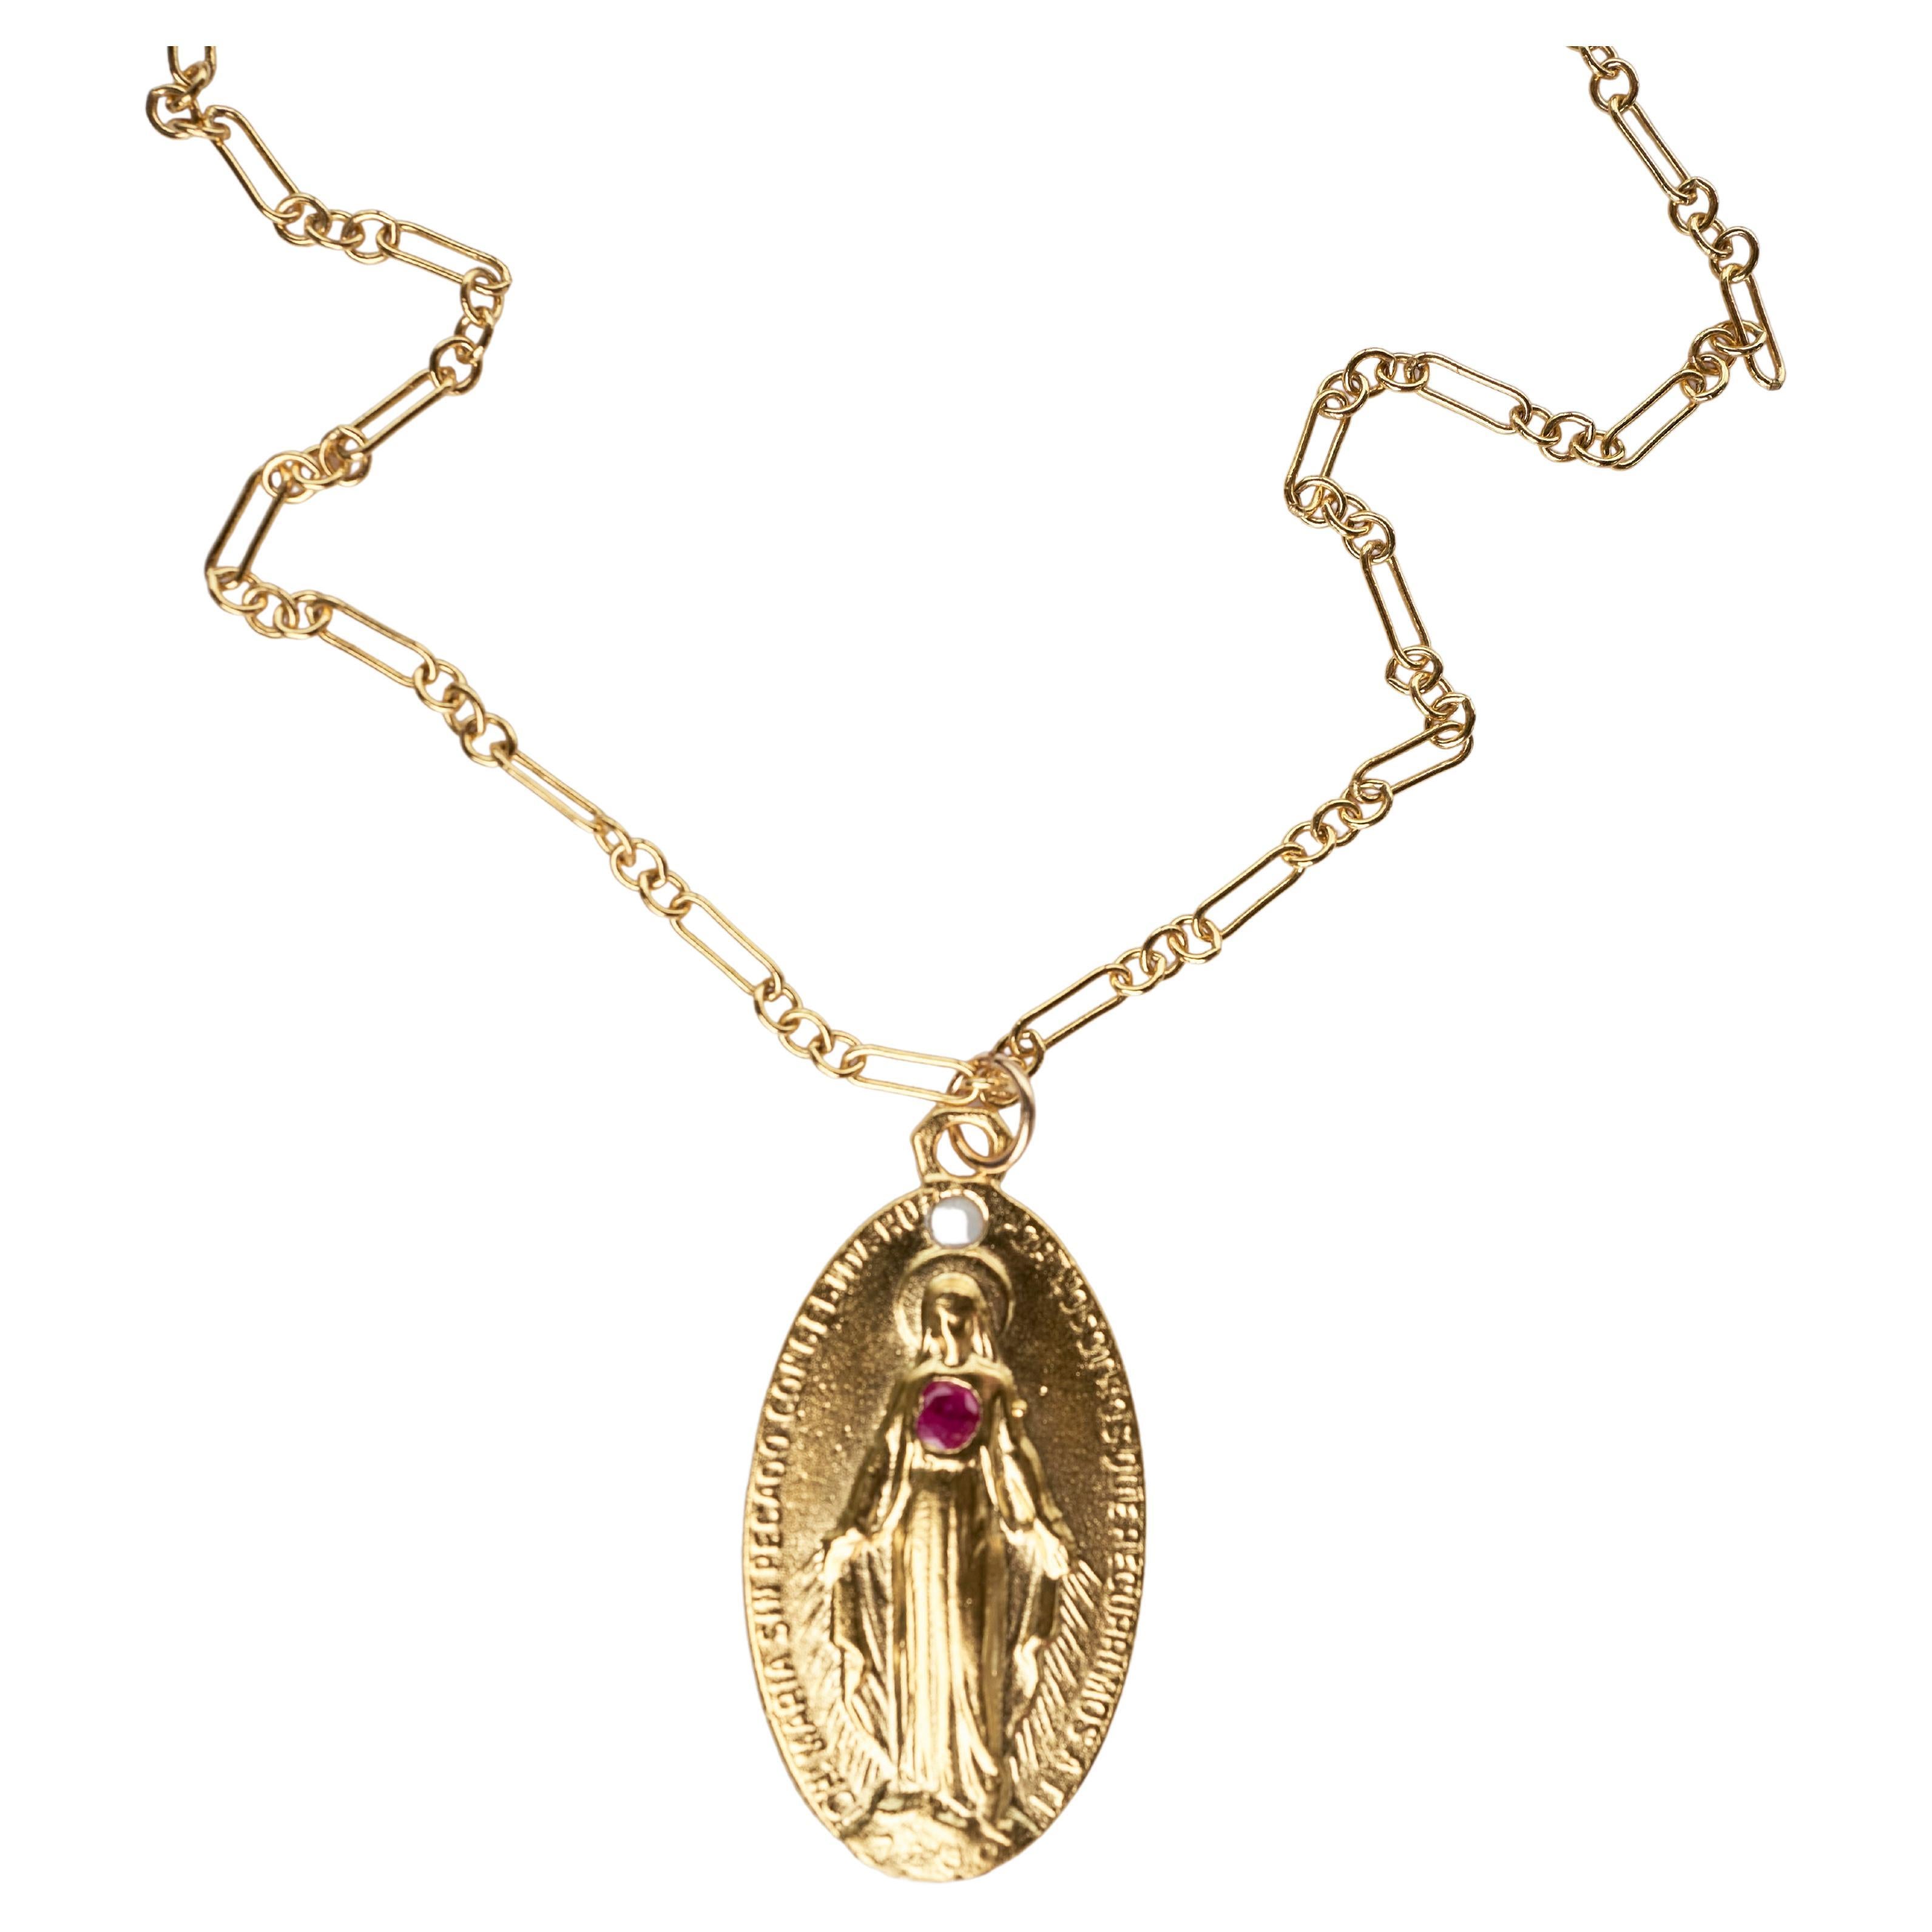 Rubin Opal Medaille Jungfrau Maria Kette Halskette
Designer: J DAUPHIN
10k Gold plattiert Messing Medaille und Gold gefüllt Kette

Symbole oder Medaillen können zu einem mächtigen Werkzeug in unserem Arsenal für das Spirituelle werden. 
Seit dem